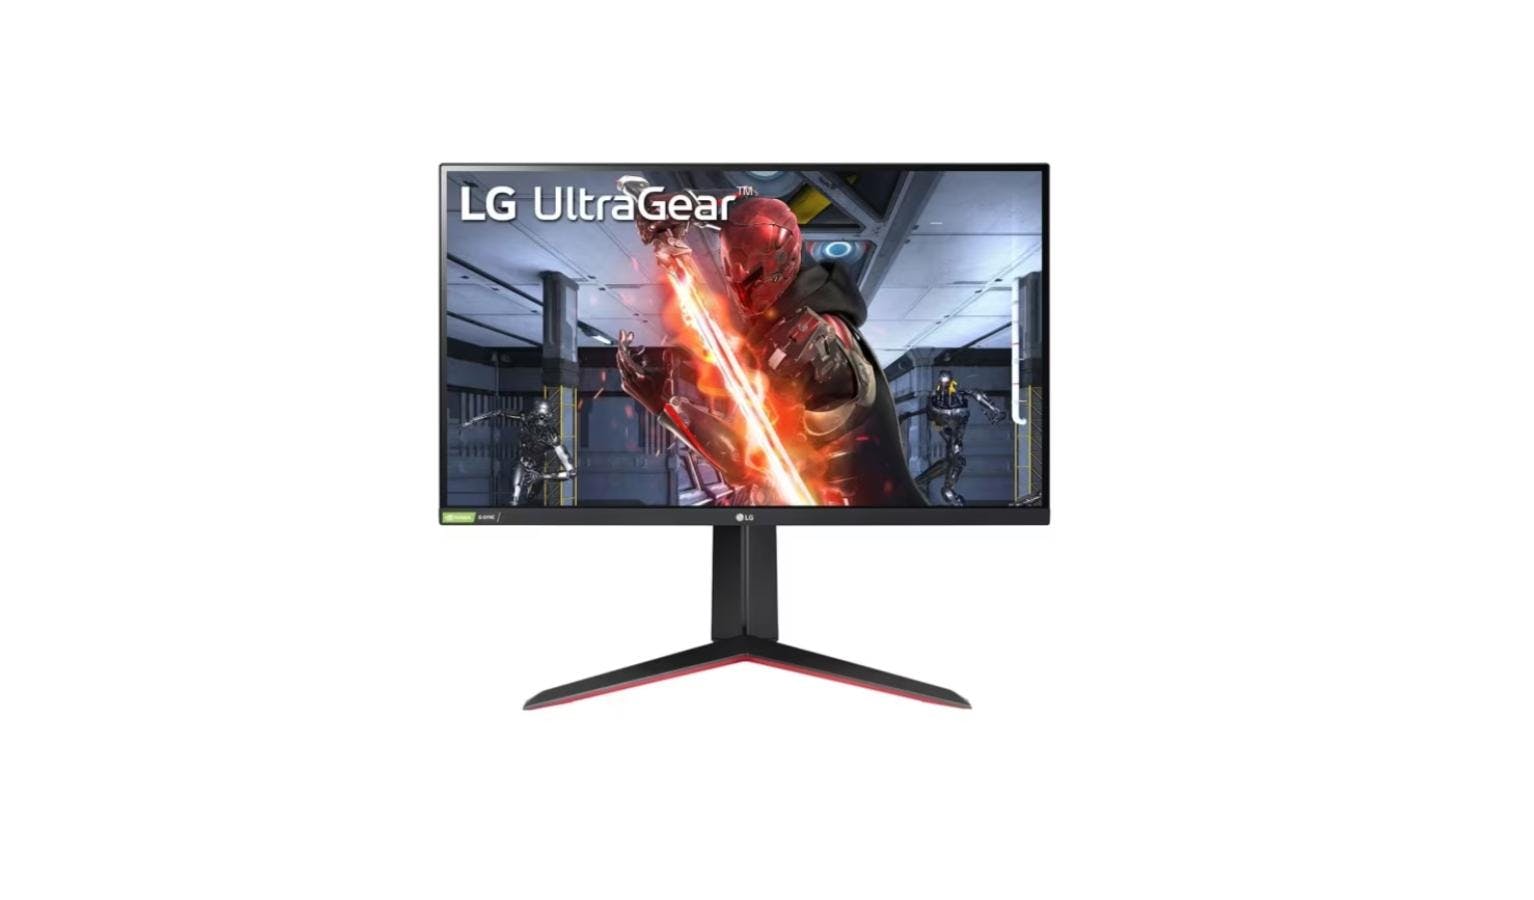 LG UltraGear™ 27-Inch FHD IPS Gaming Monitor with AMD FreeSync